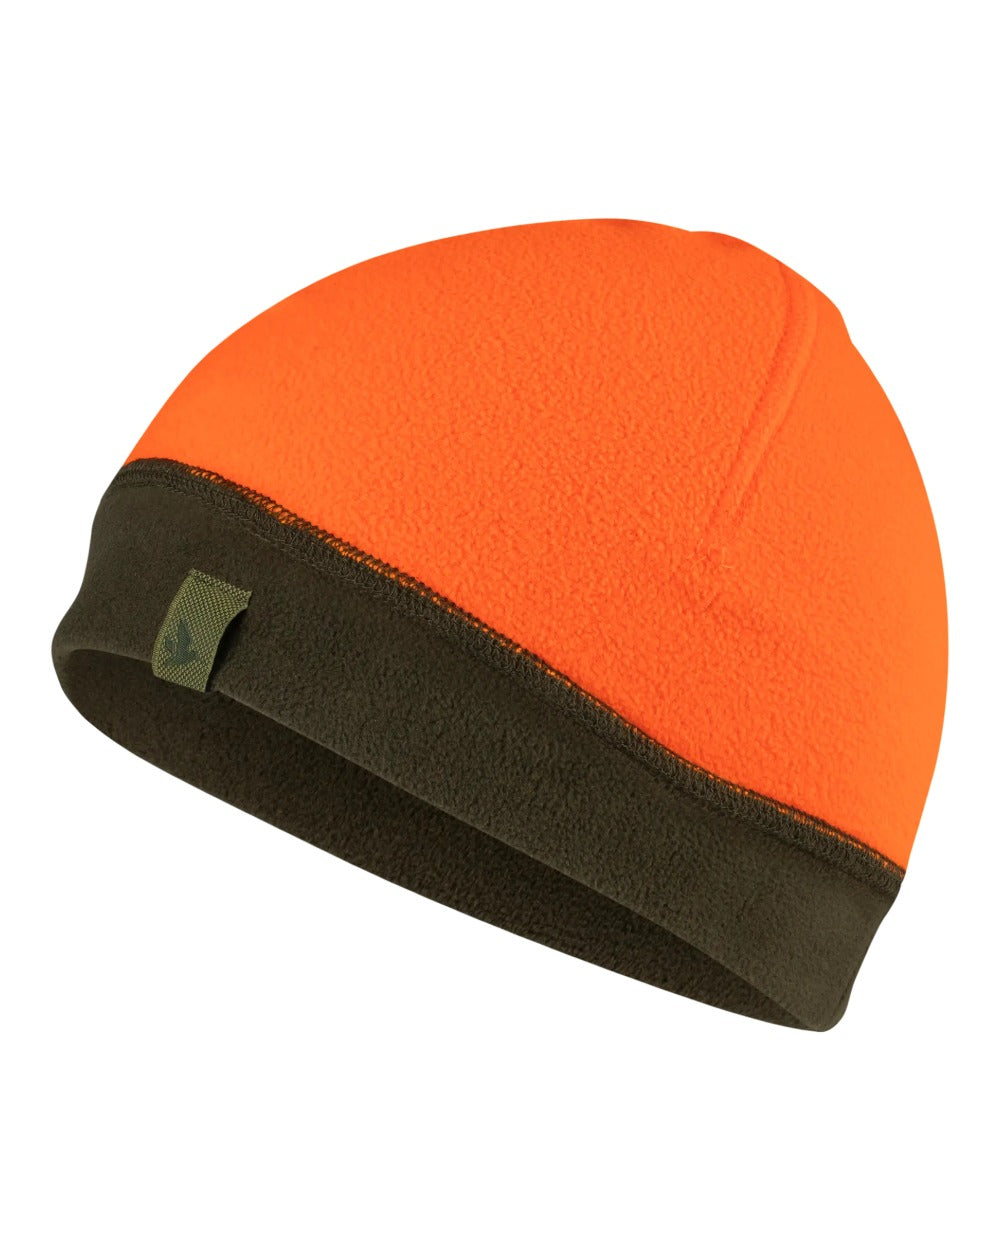 Seeland Reversible Fleece Hat in Pine Green/Hi-Vis Orange